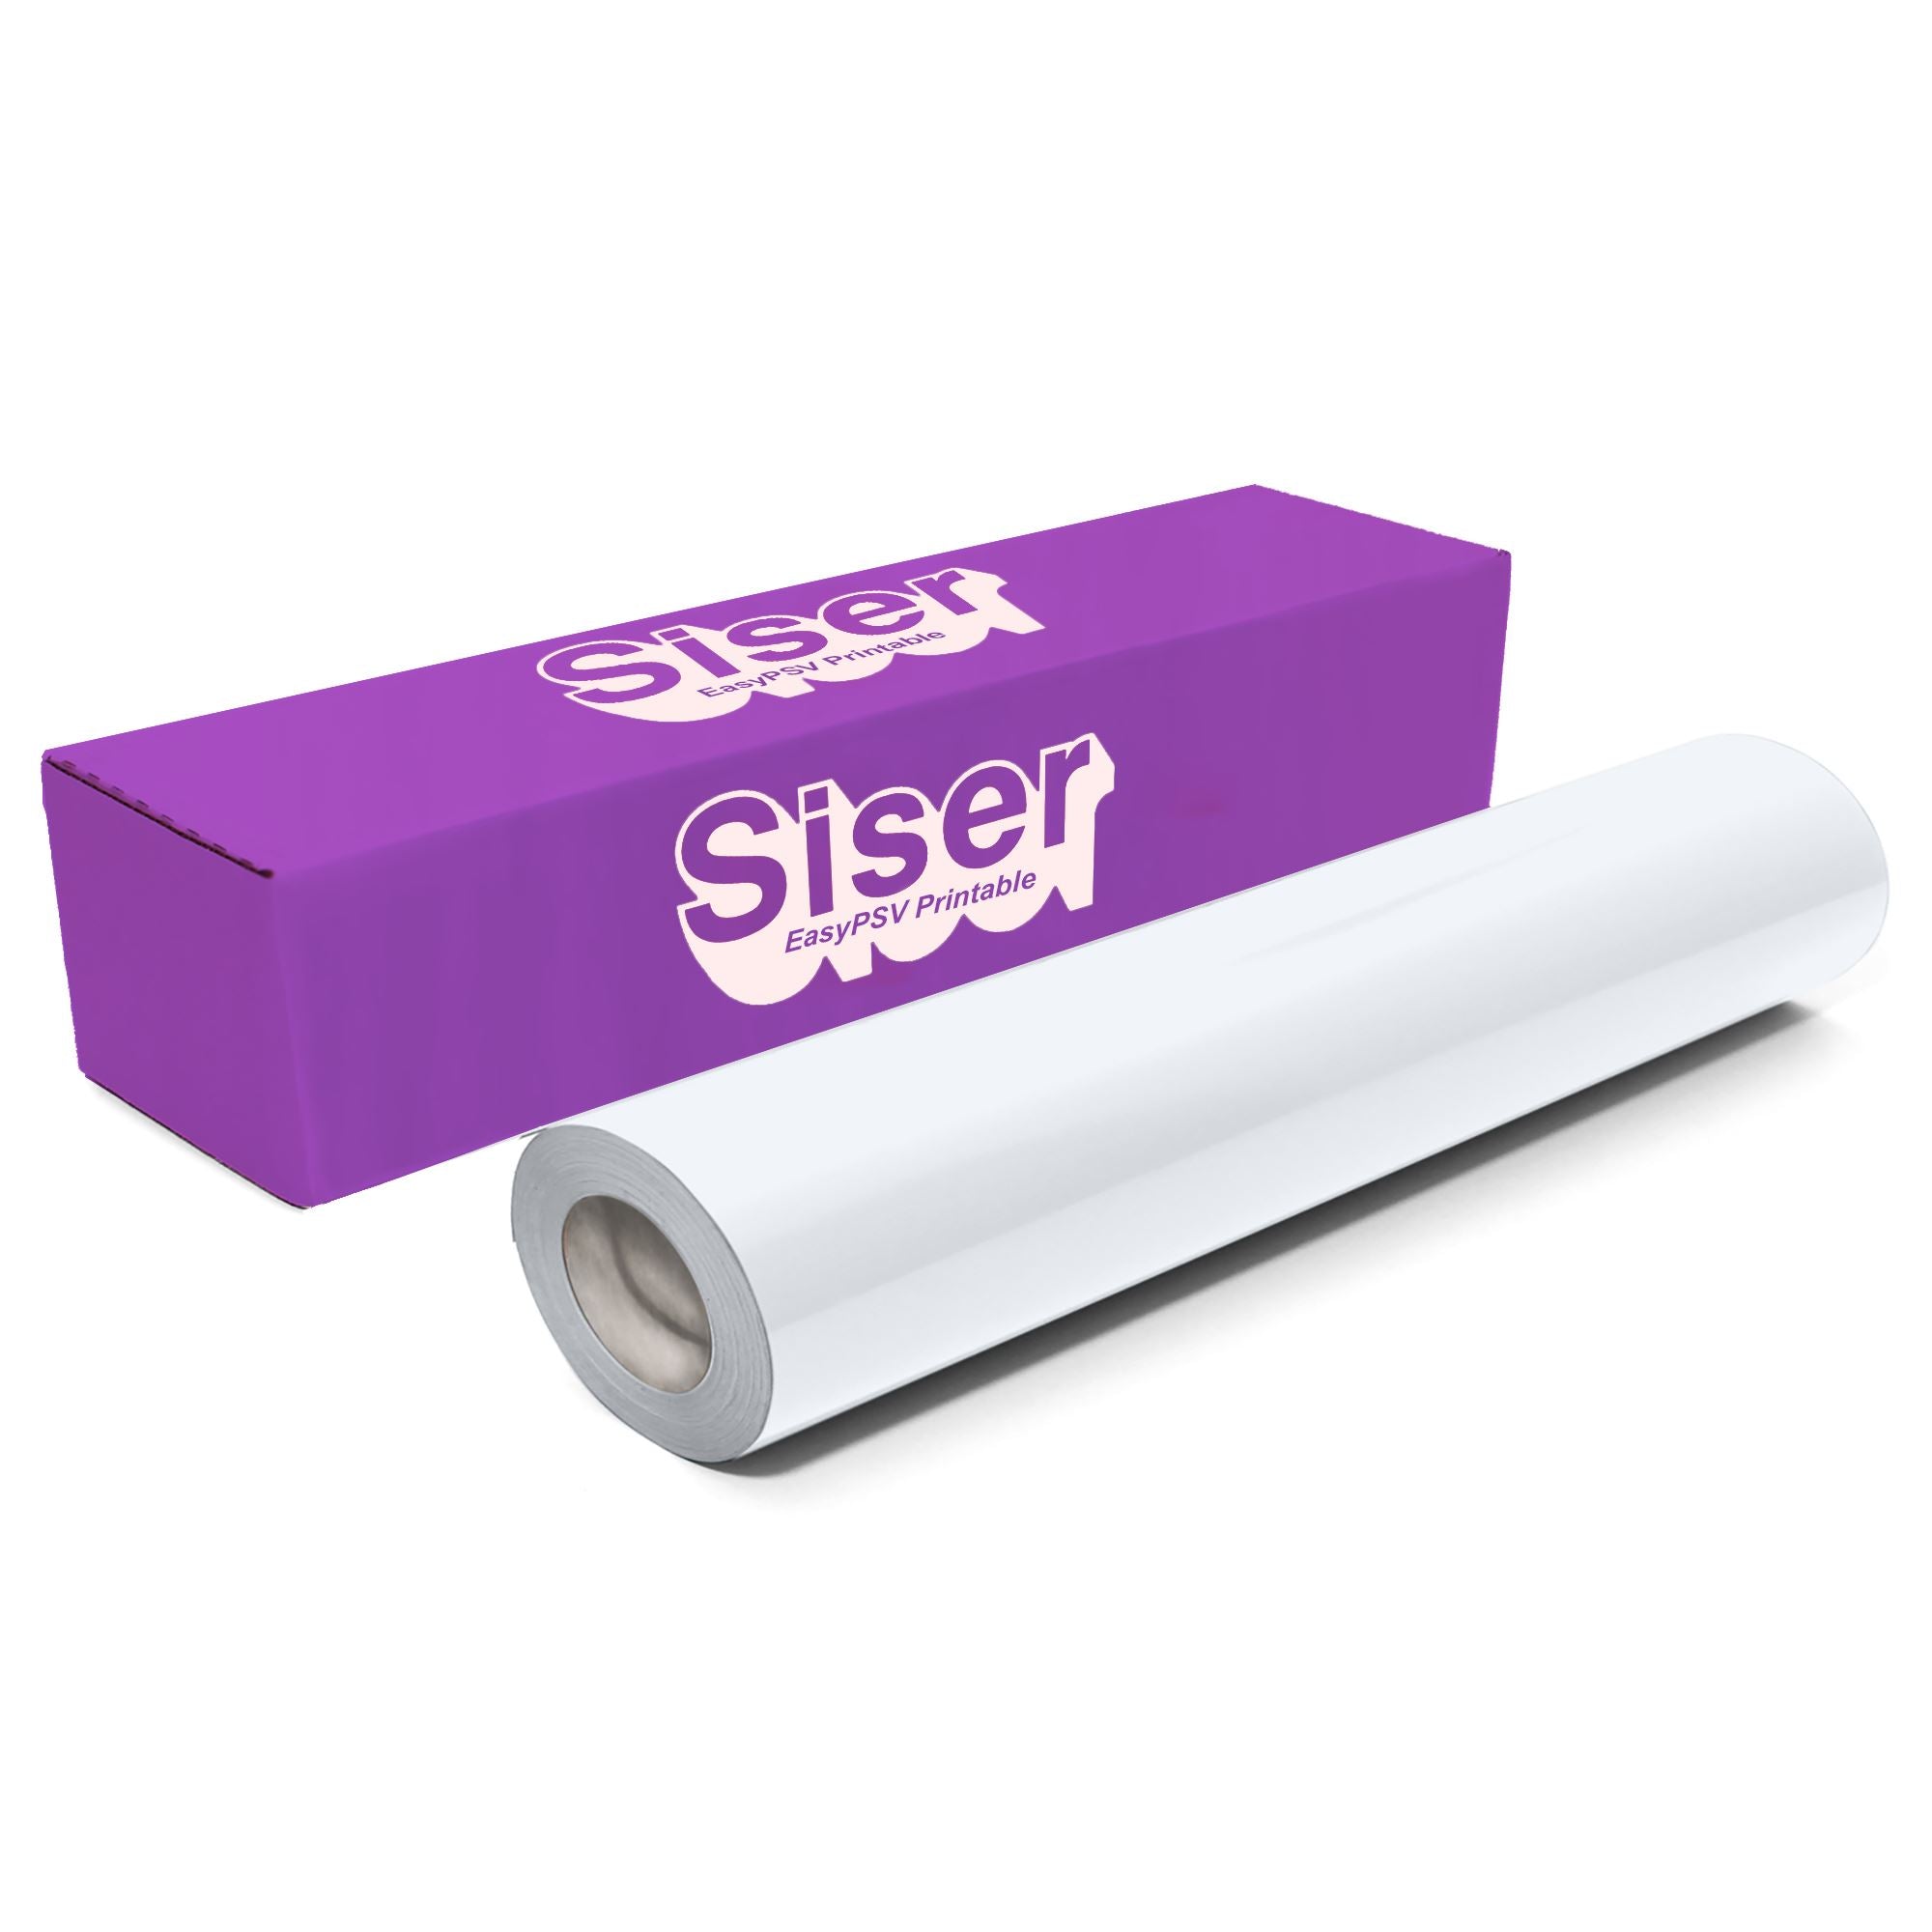 DesignTec - Vinilo adhesivo glitter Siser EasyPSV 30 x 50 cm